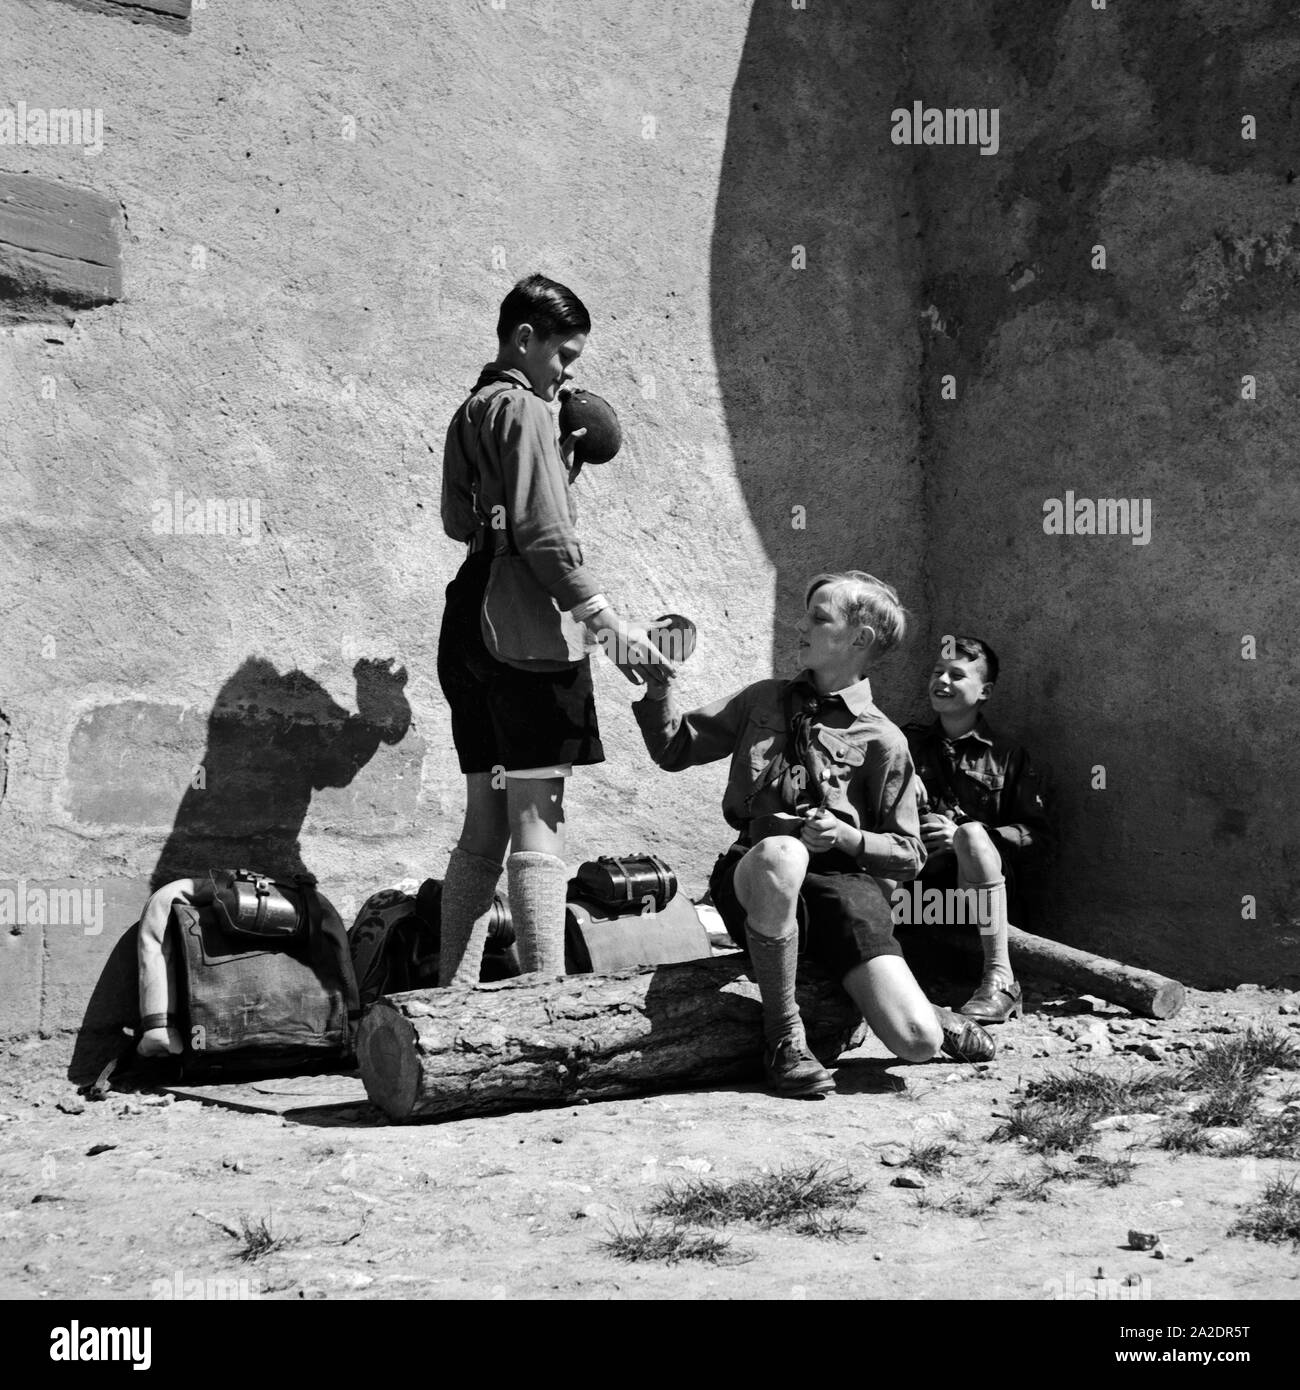 Drei Hitlerjungen rasten in Rothenburg ob der Tauber, Deutschland 1930er Jahre. Three Hitler youths having a break at Rothenburg ob der Tauber, Germany 1930s. Stock Photo